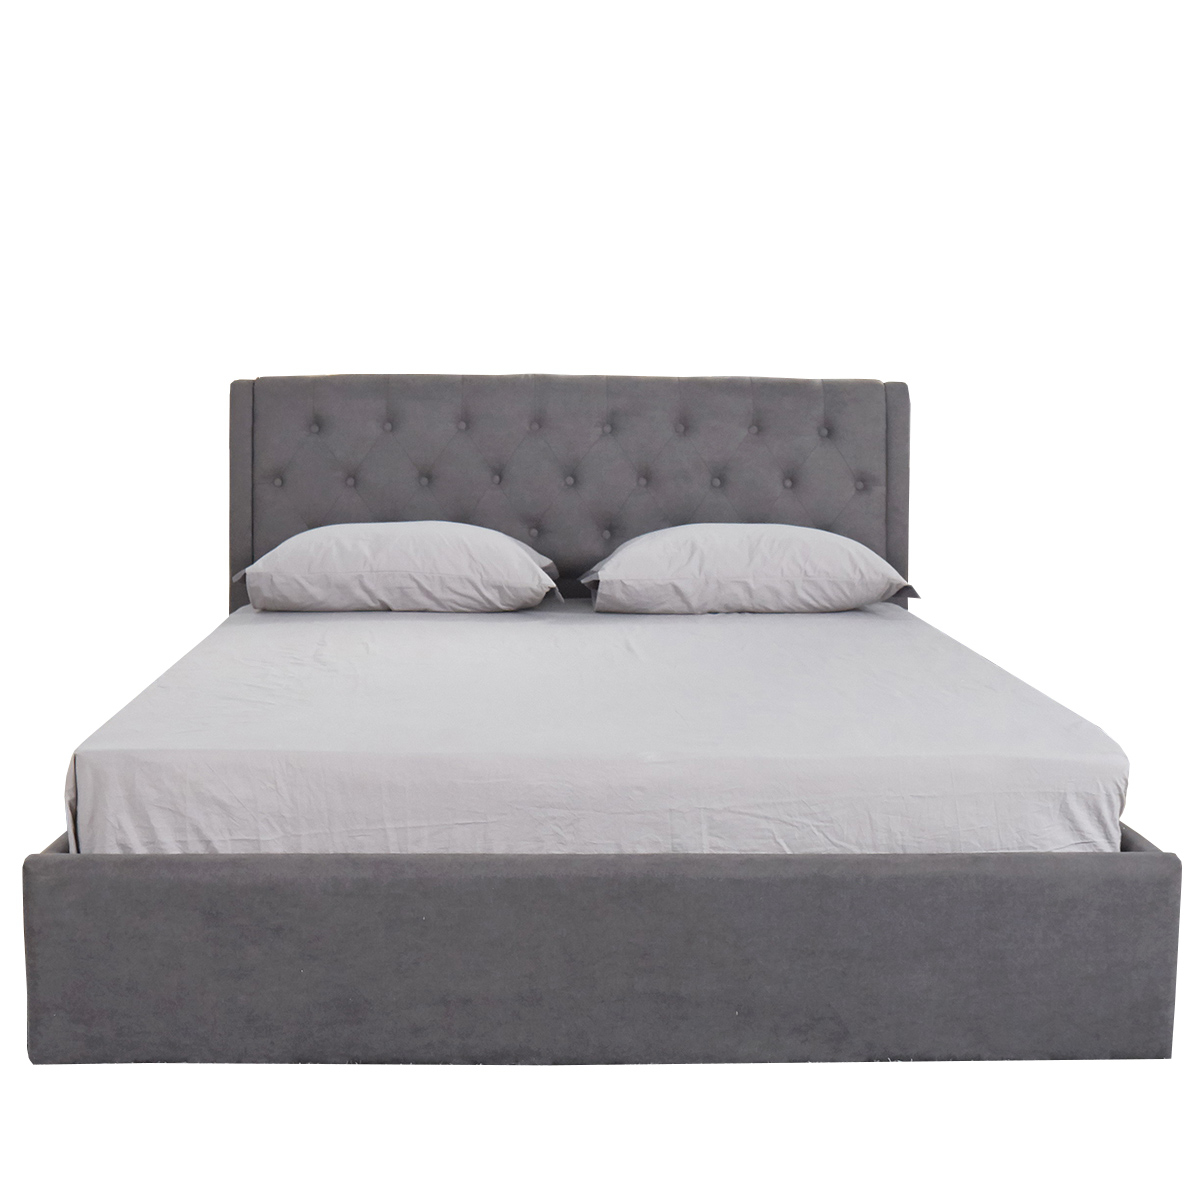 Κρεβάτι ASTER Σκούρο Γκρι Ύφασμα Με Αποθηκευτικό Χώρο 219x170x104cm